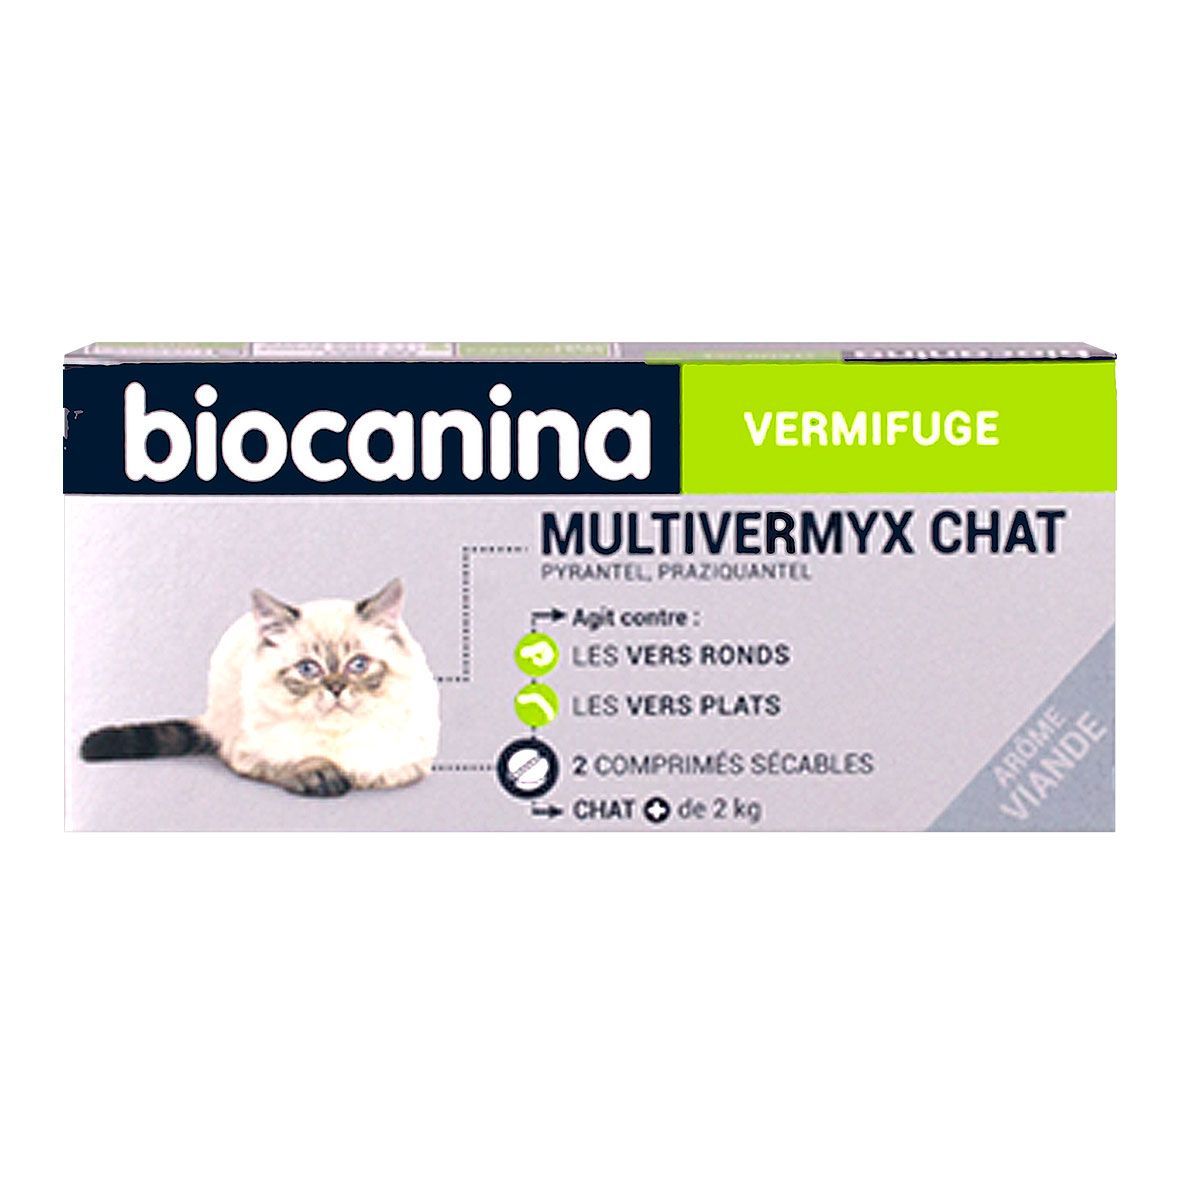 Multivermyx chat Biocanina est un médicament vétérinaire vermifuge sous  forme de comprimés sécables.